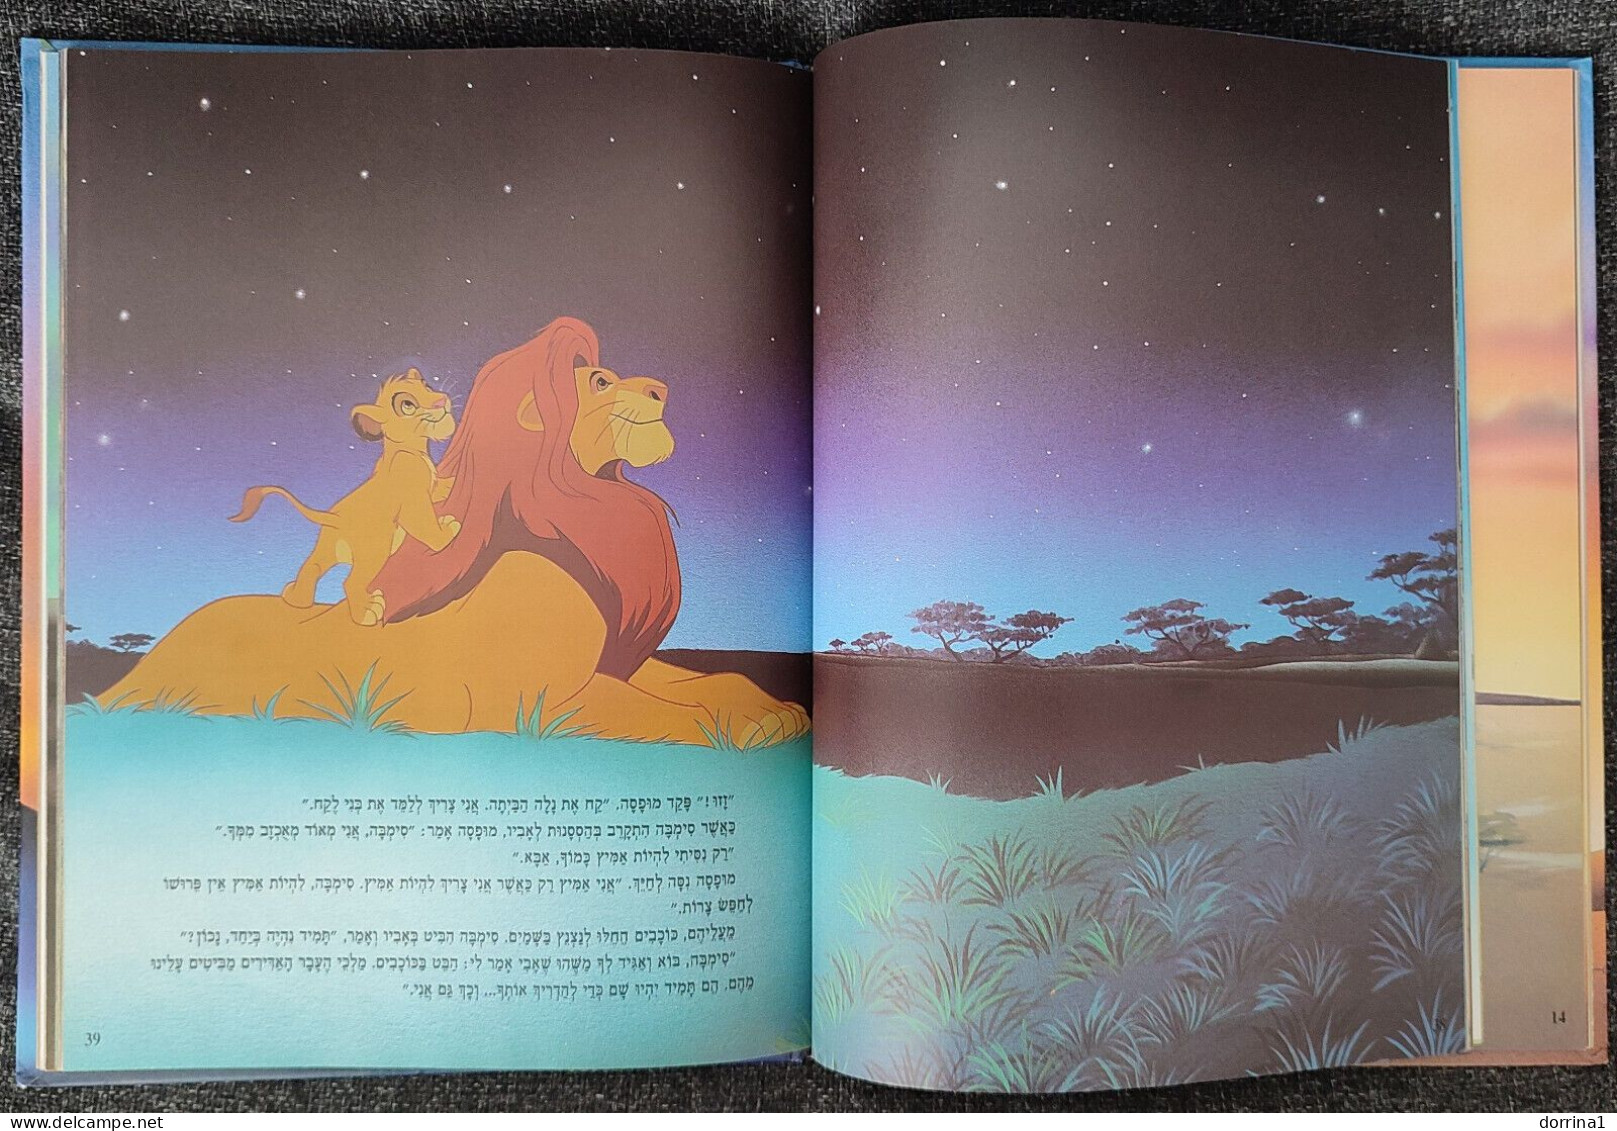 LION KING - Hebrew Disney Book Printed In Israel 2004 - מלך האריות - Junior